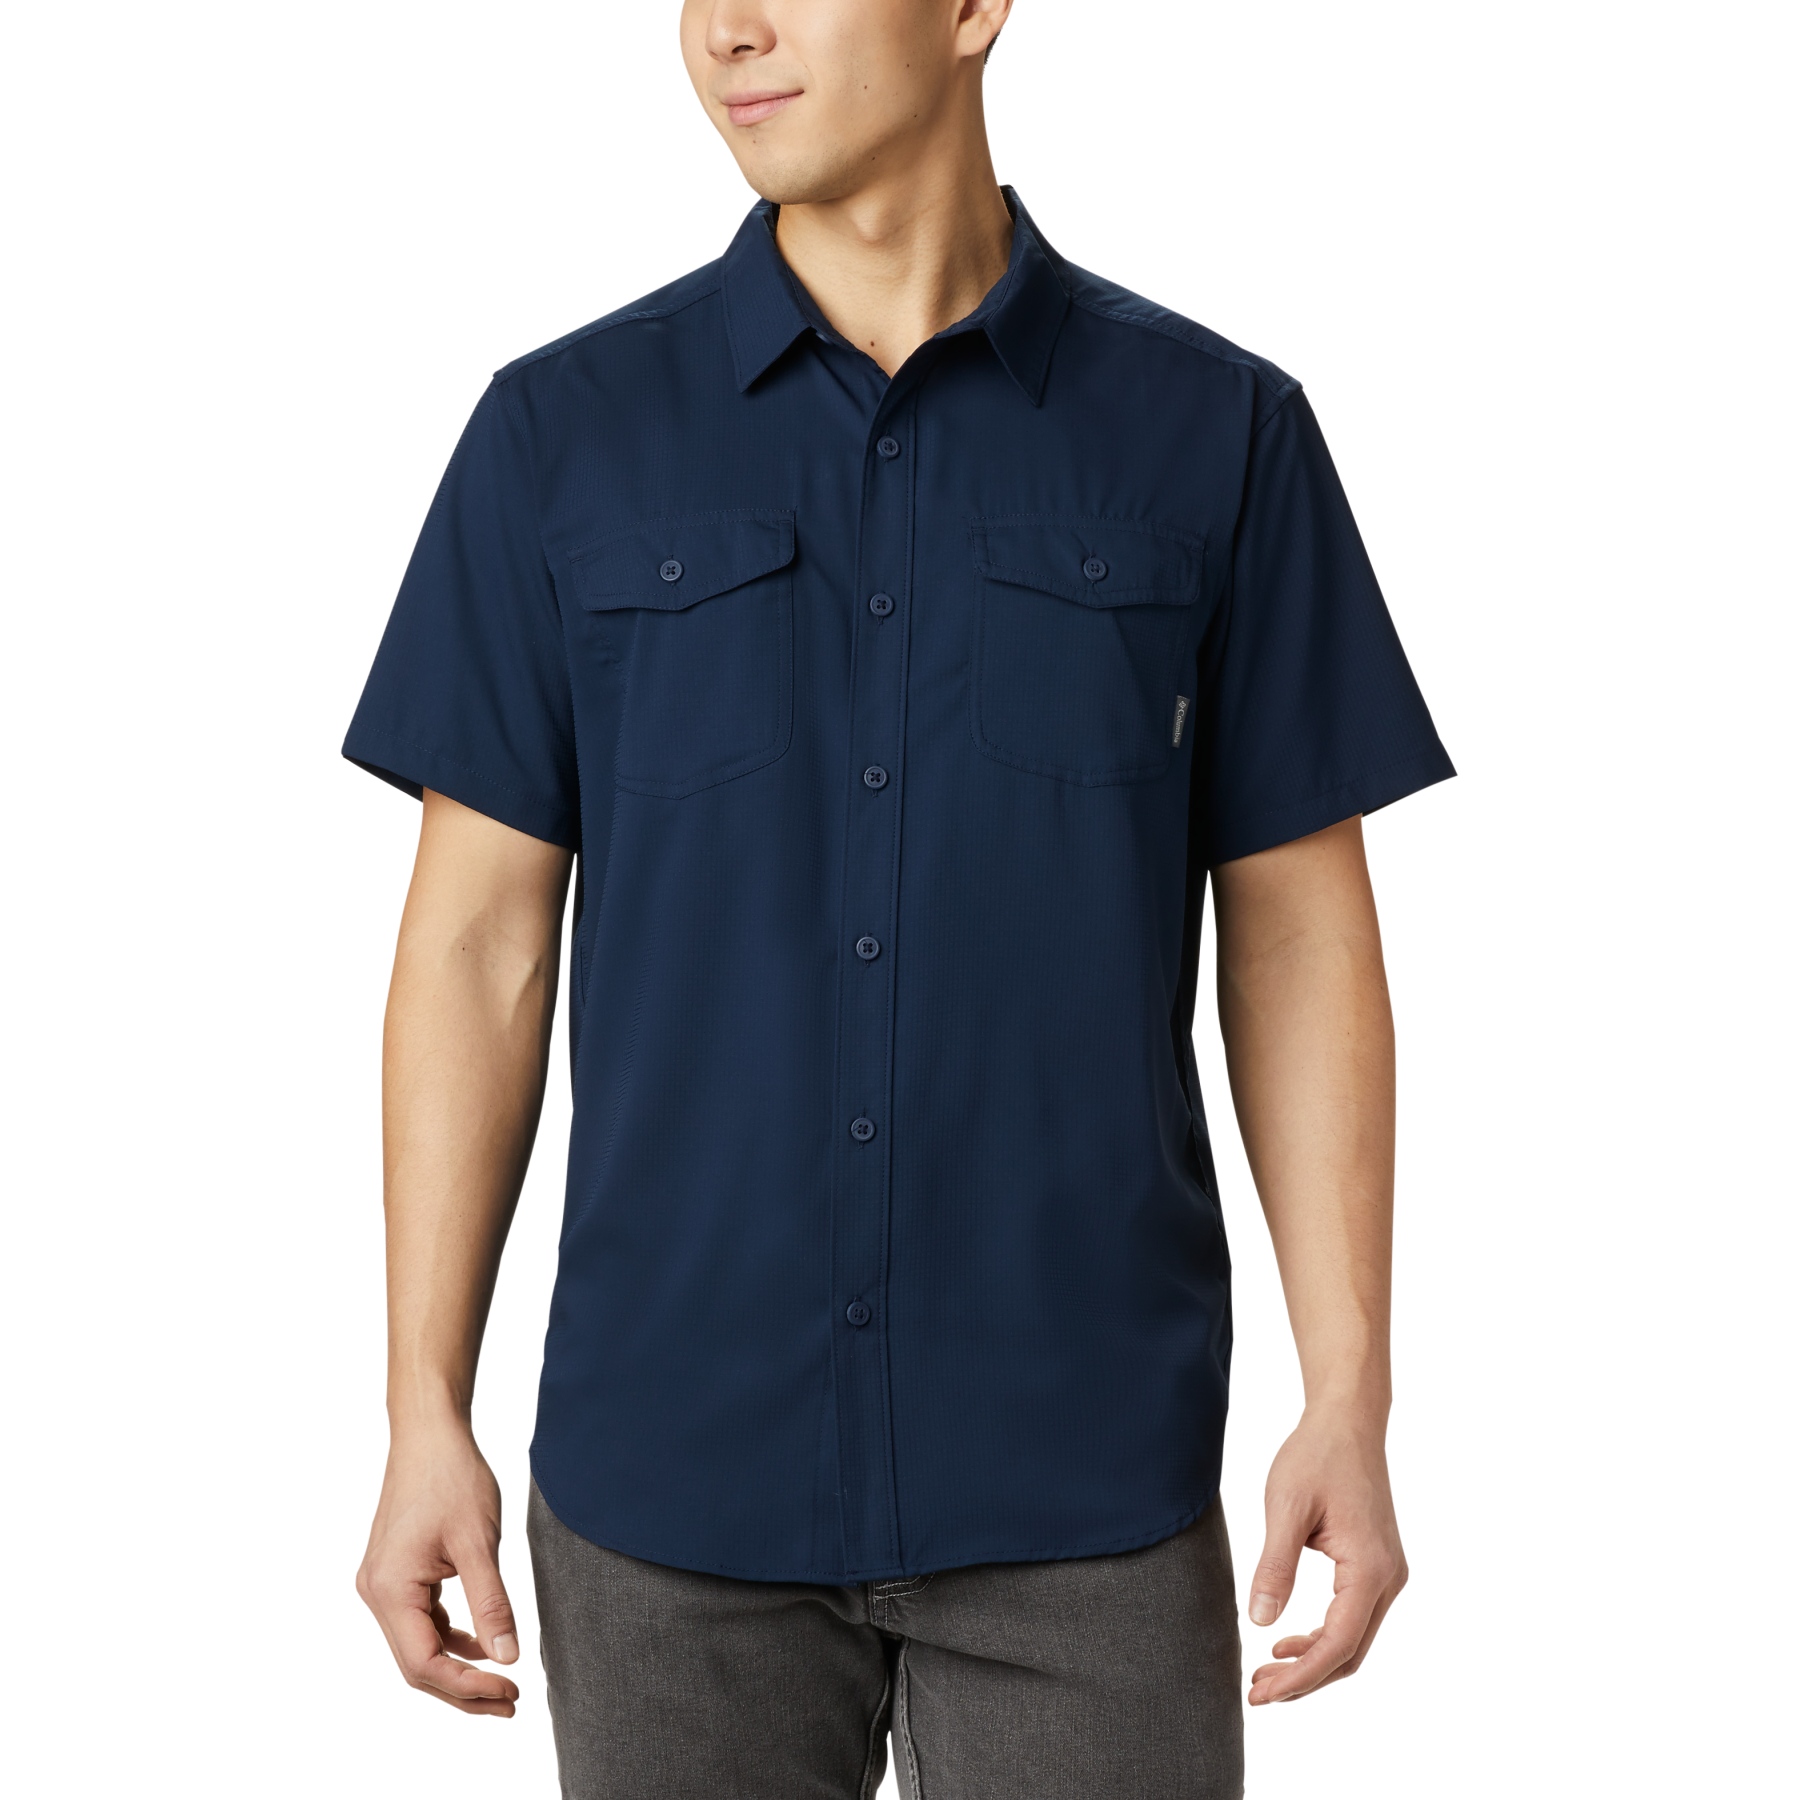 Image of Columbia Utilizer II Solid Short Sleeve Shirt Men - Collegiate Navy